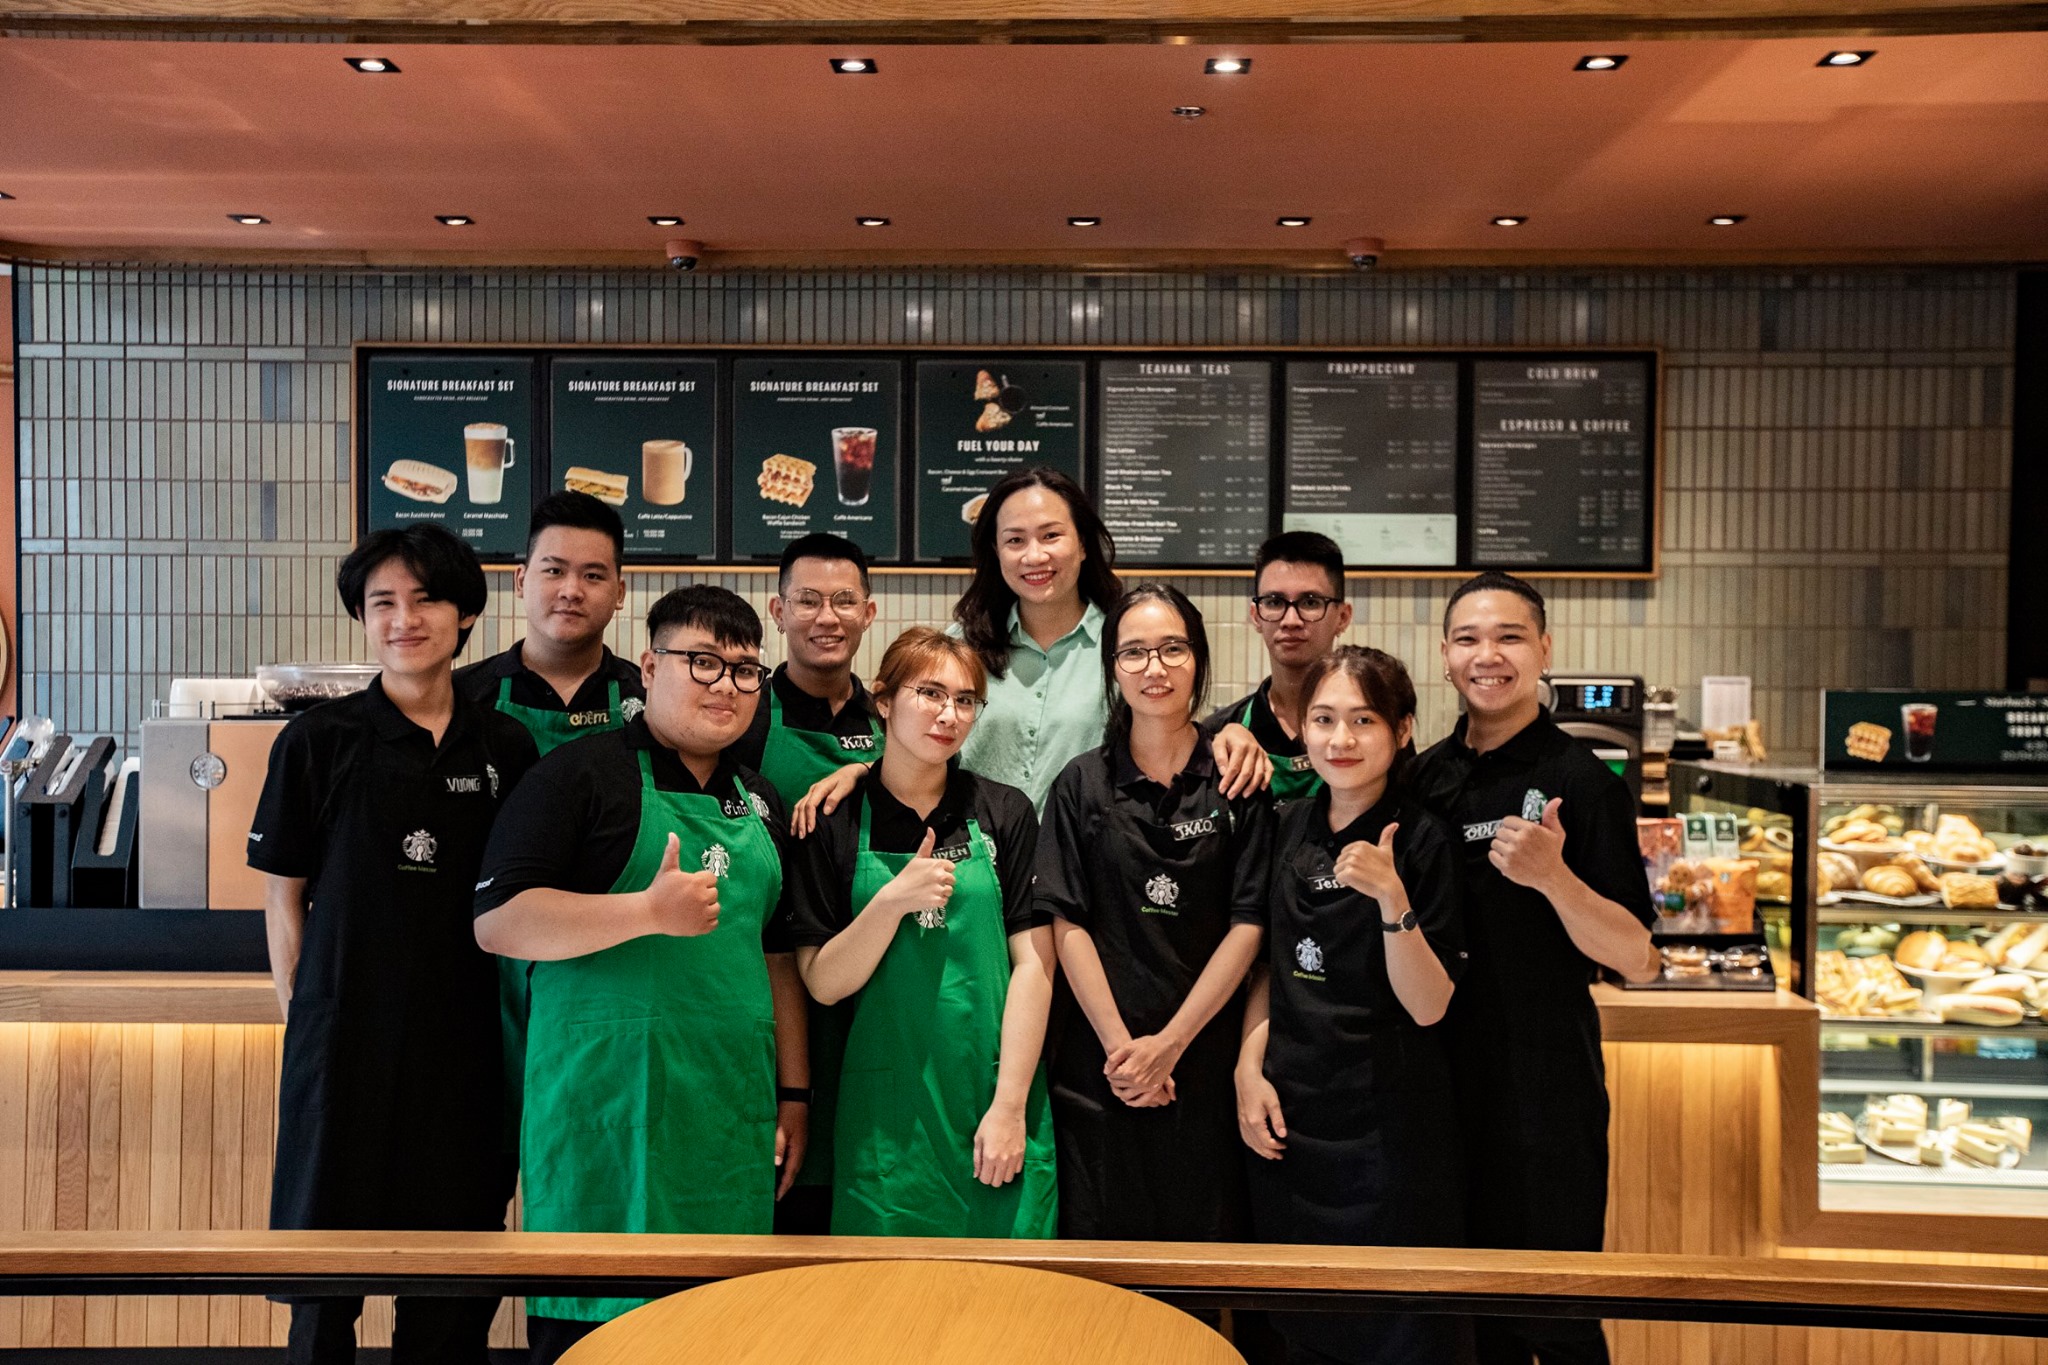 Dong phuc Starbucks05 - Đồng phục Starbucks